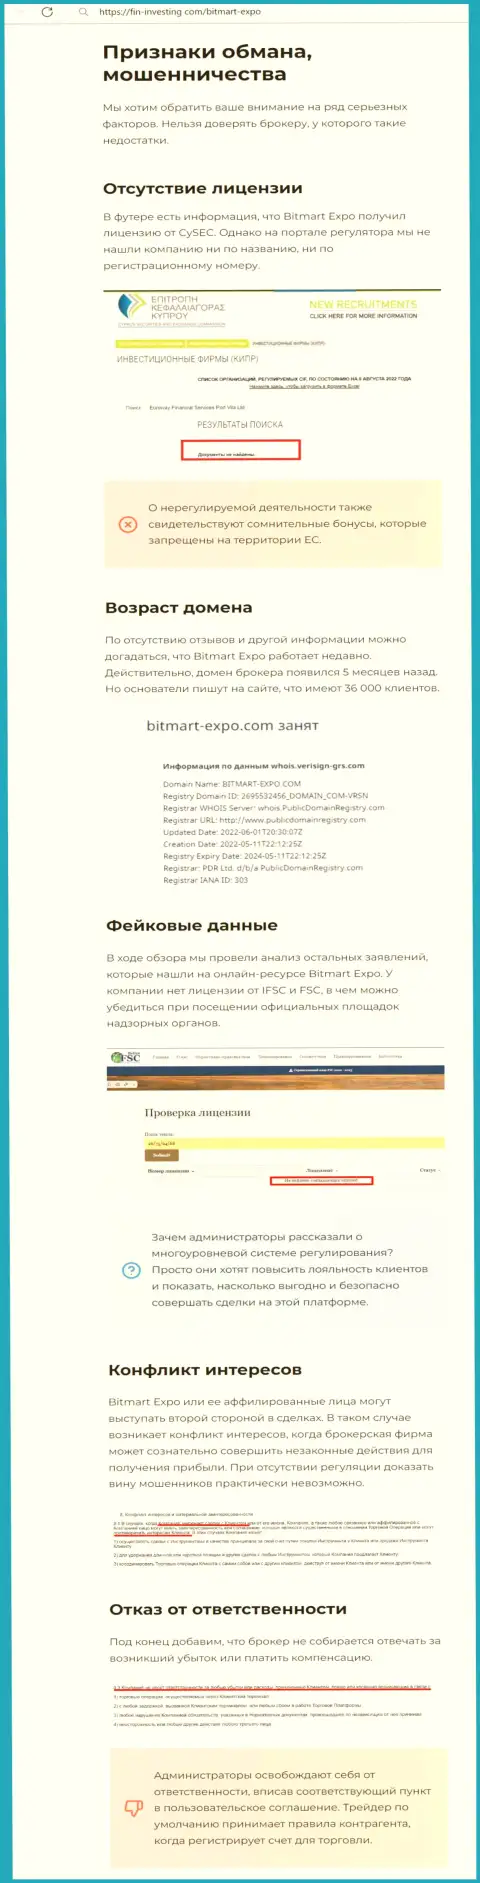 Публикация о жульнических условиях взаимодействия в конторе Bitmart Expo